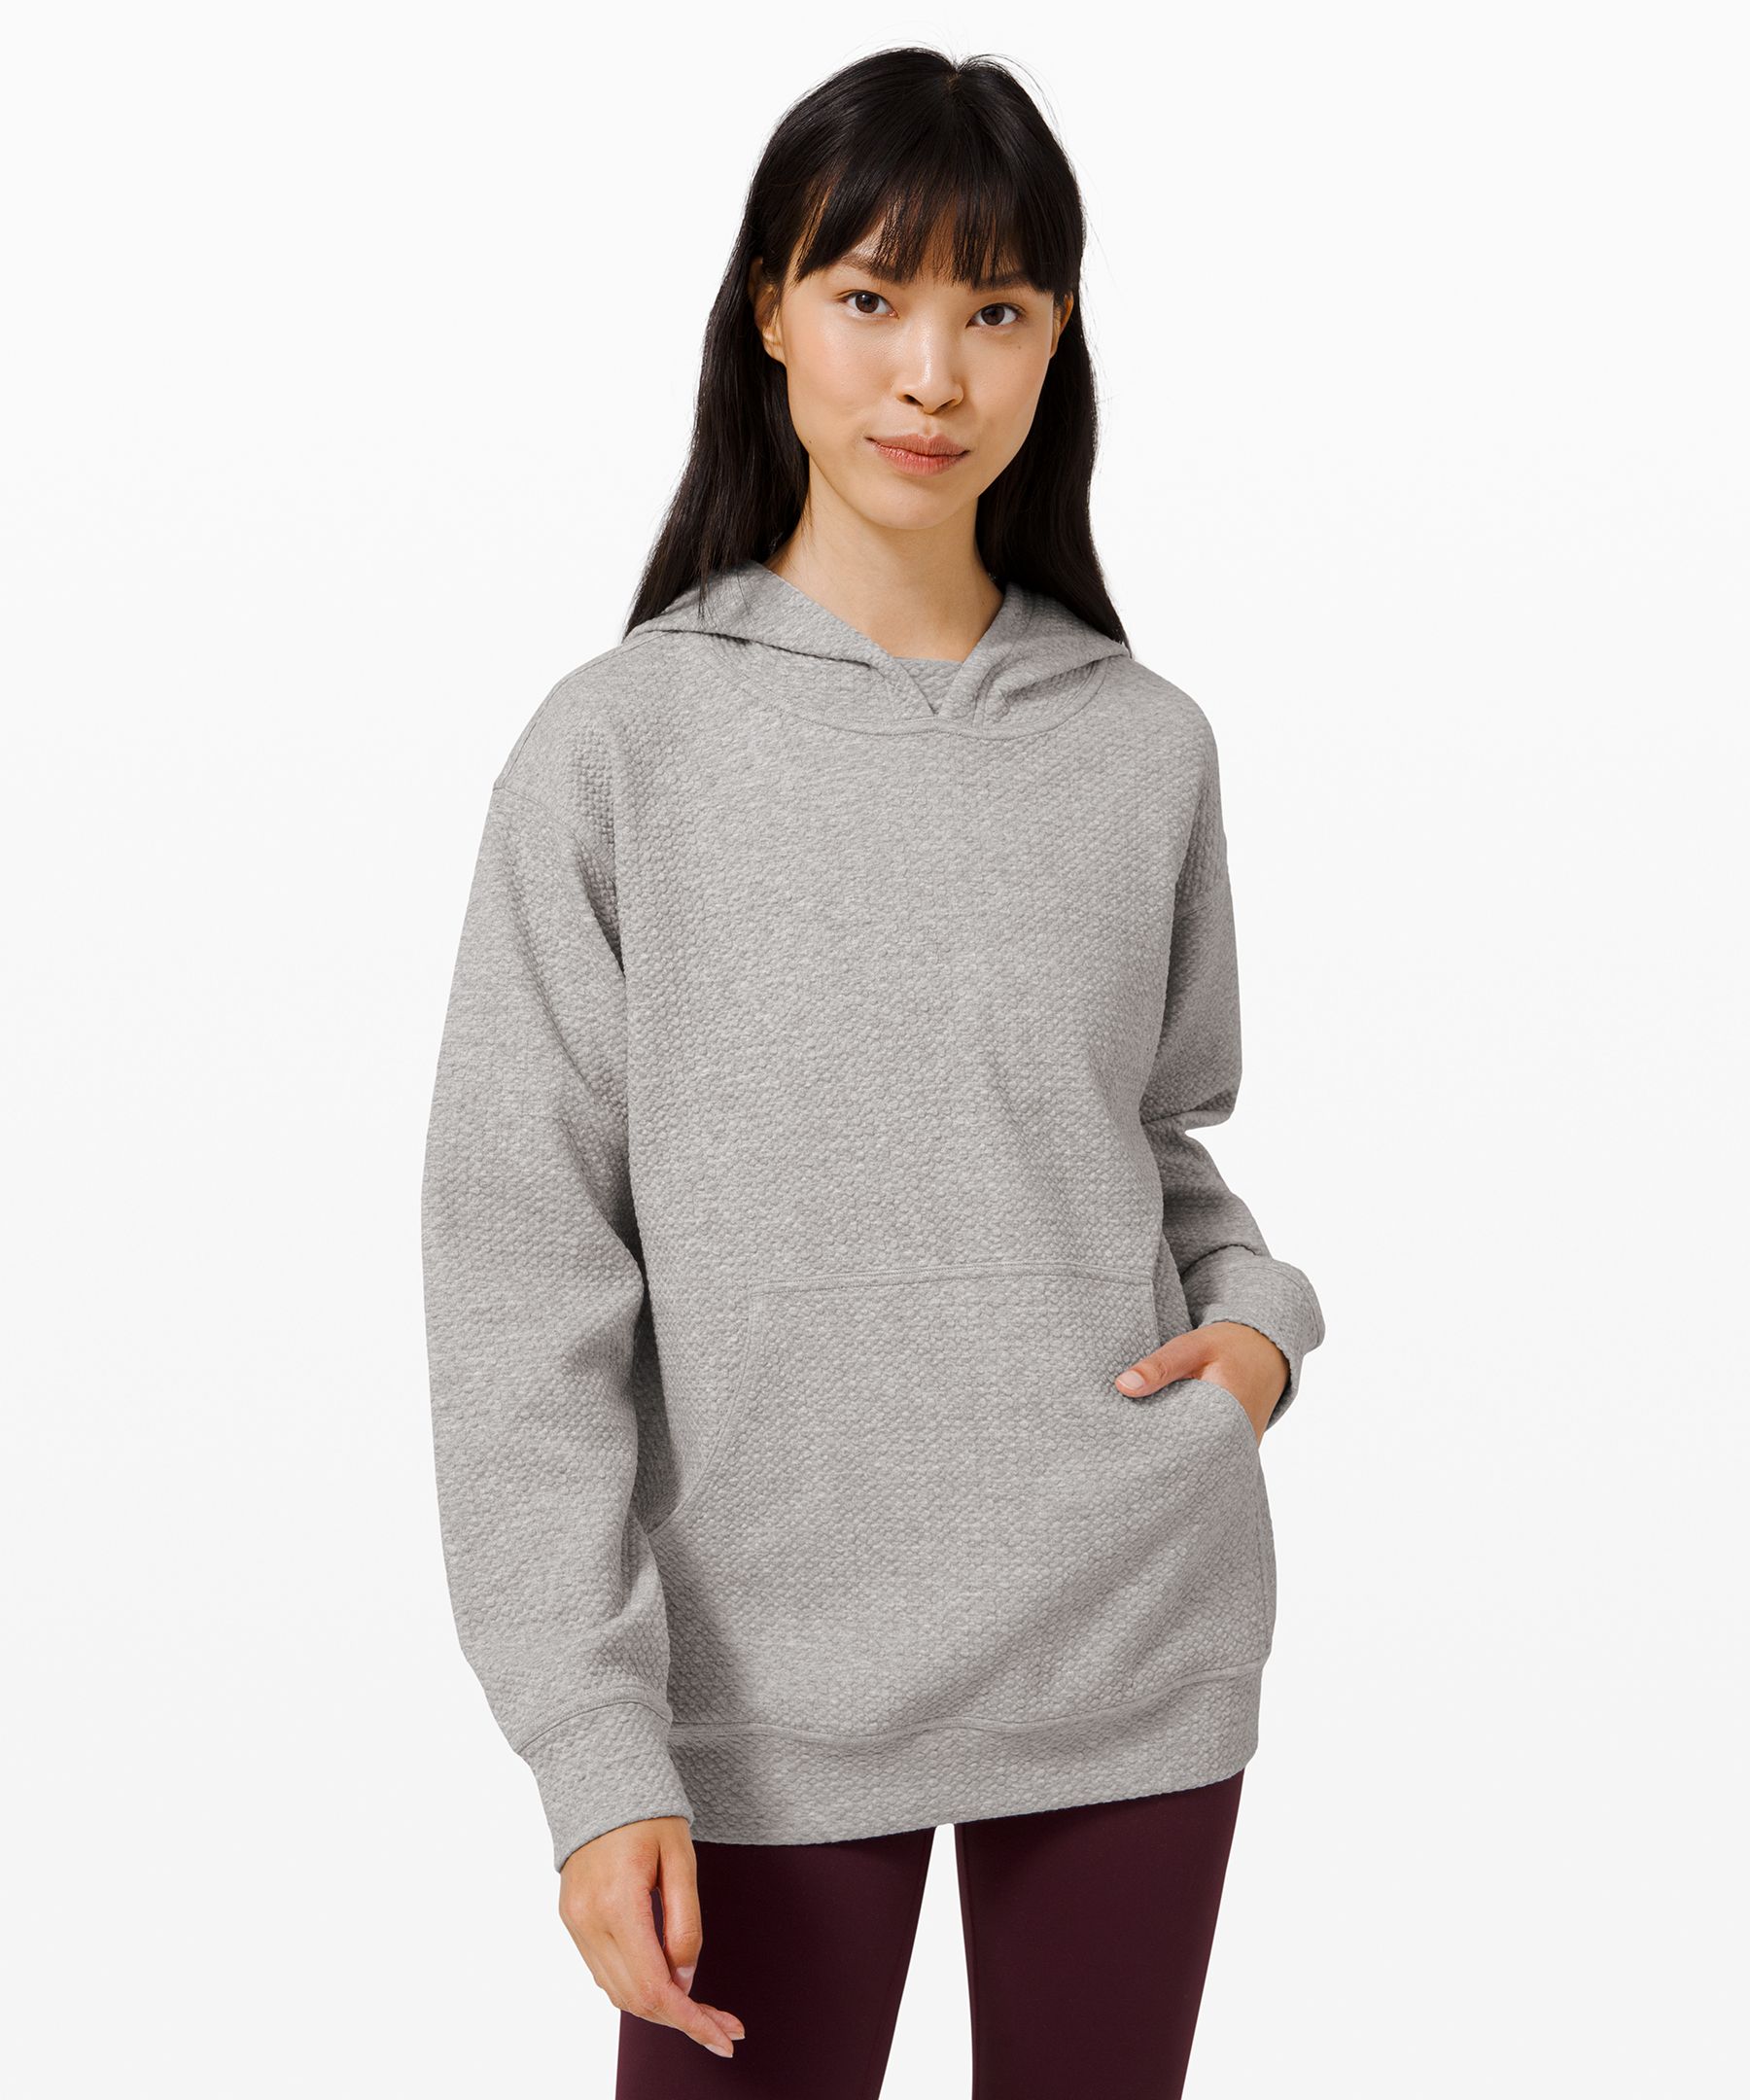 lululemon hooded sweatshirt